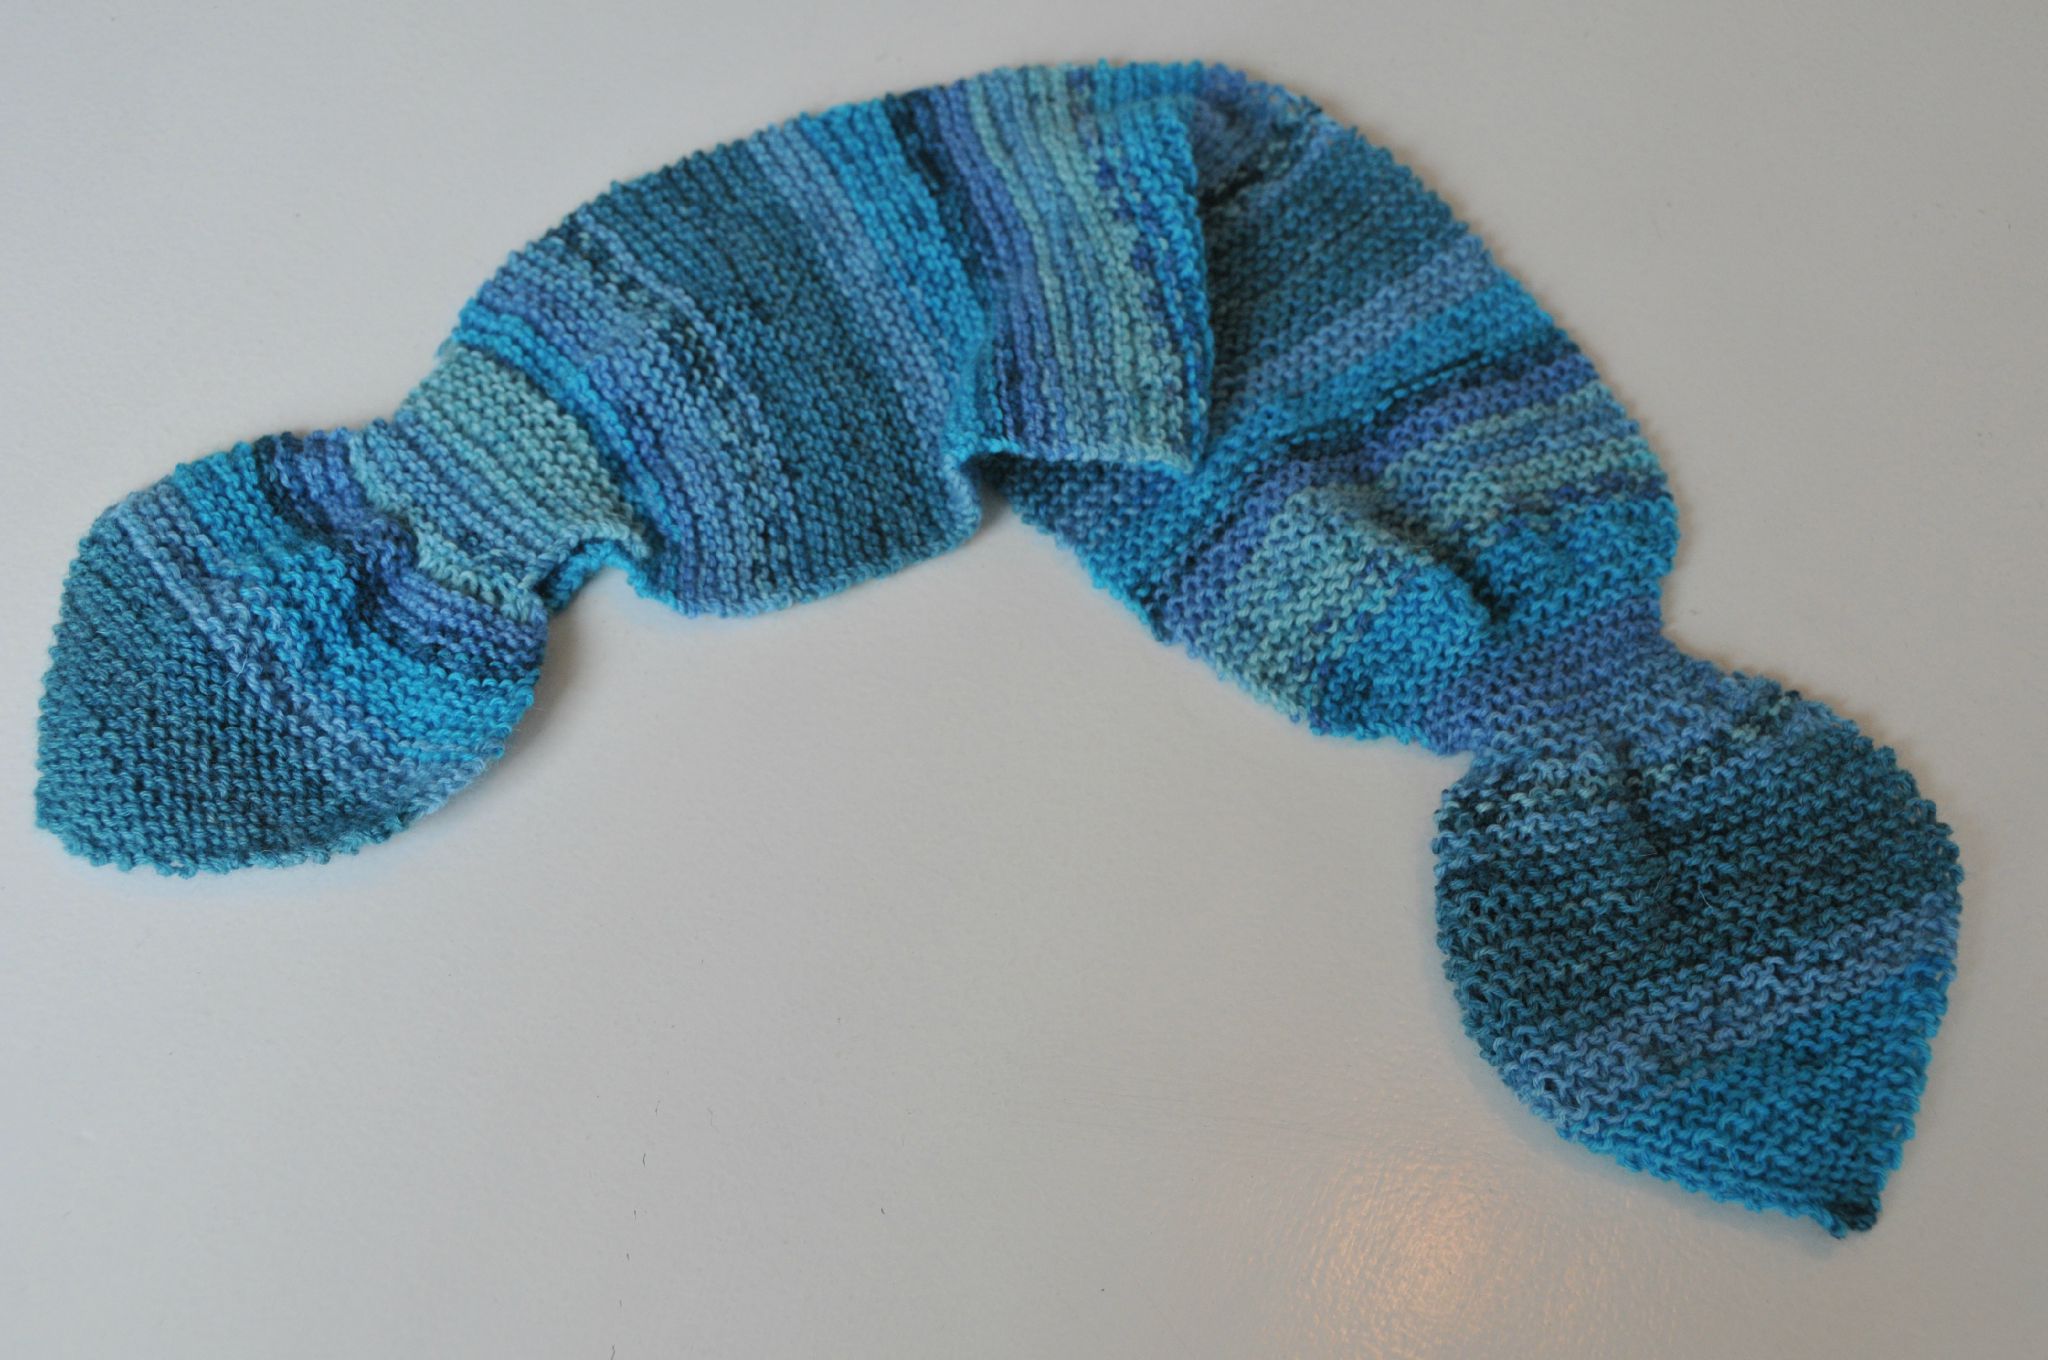 tricoter une queue de sirene